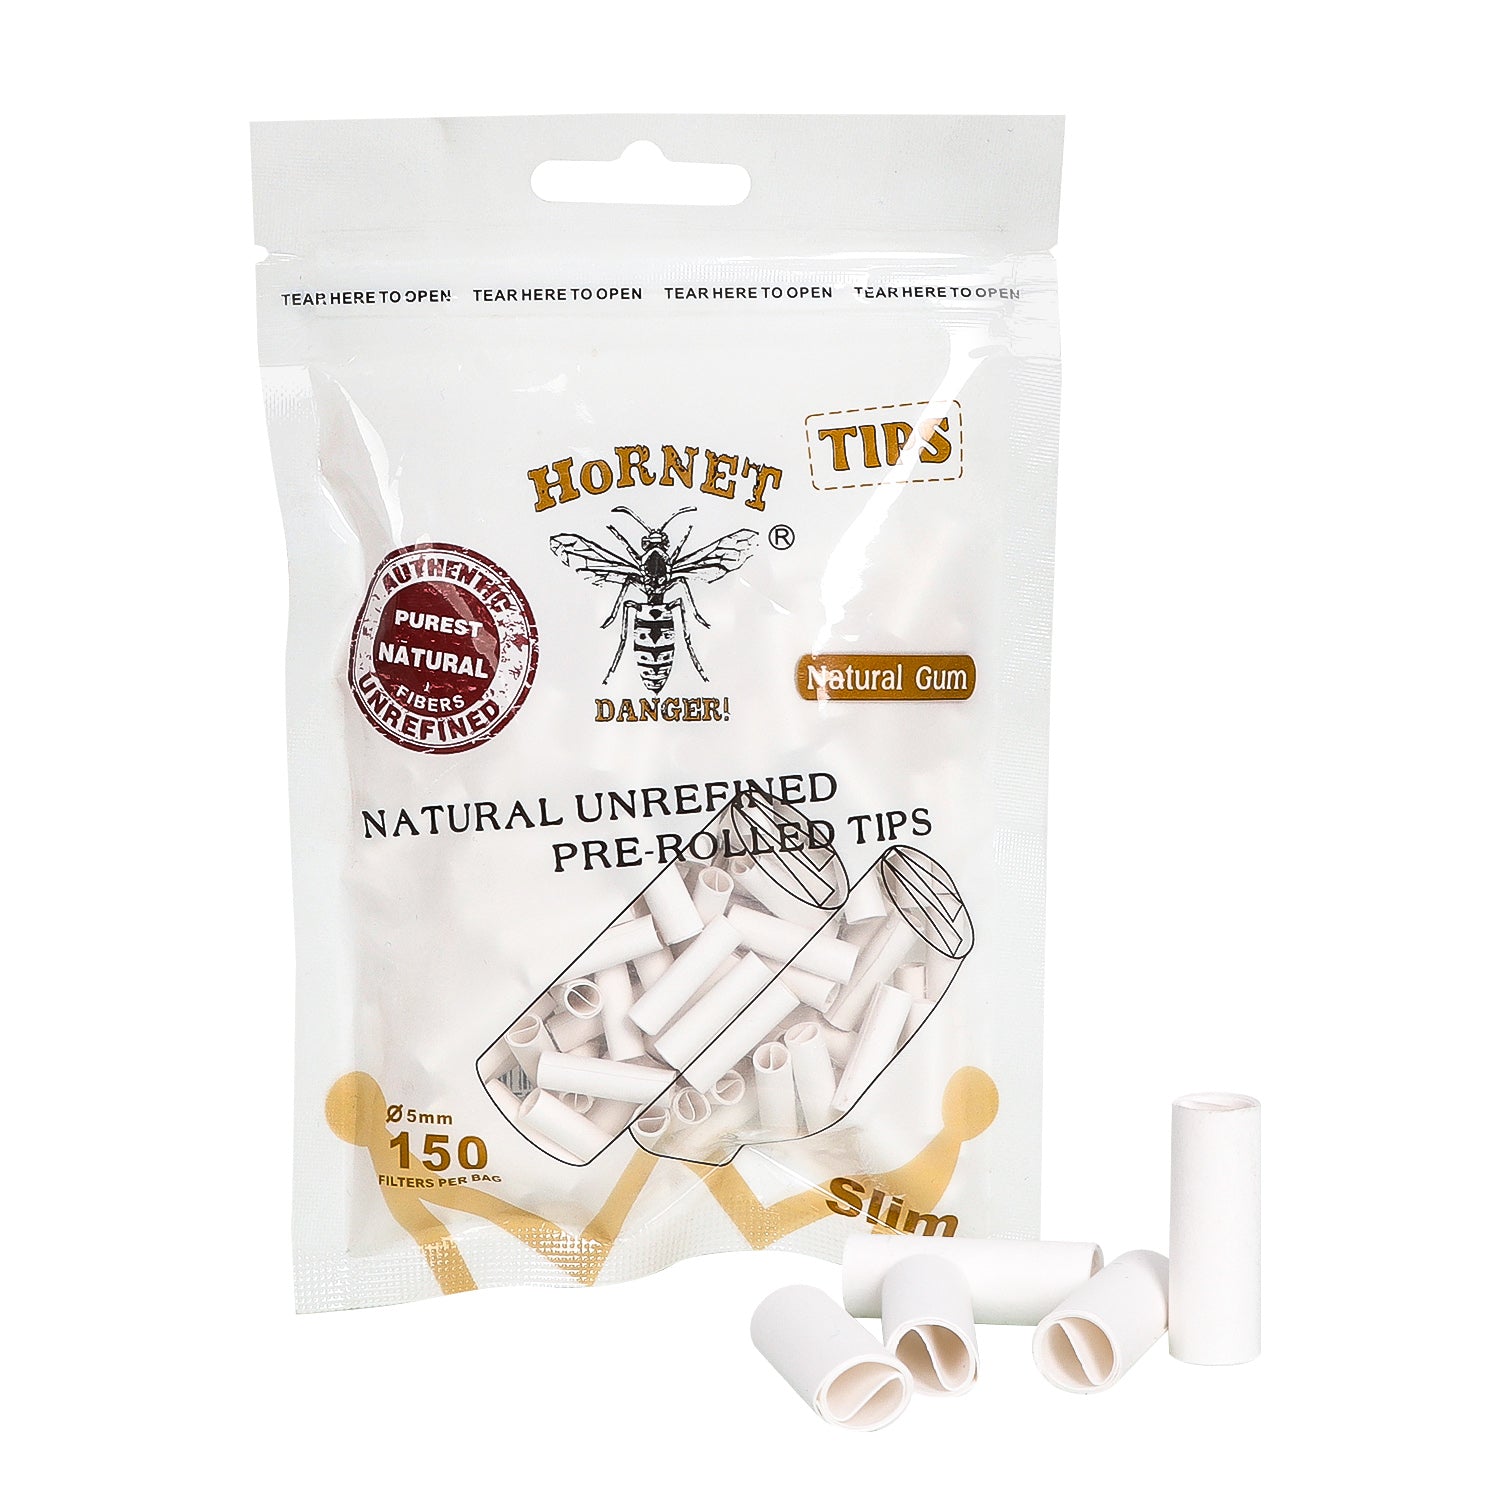 HORNET Ø 5 Pre Rolled Tips, White Organic Cigarette Rolling Tips, 150 Tips / Pack